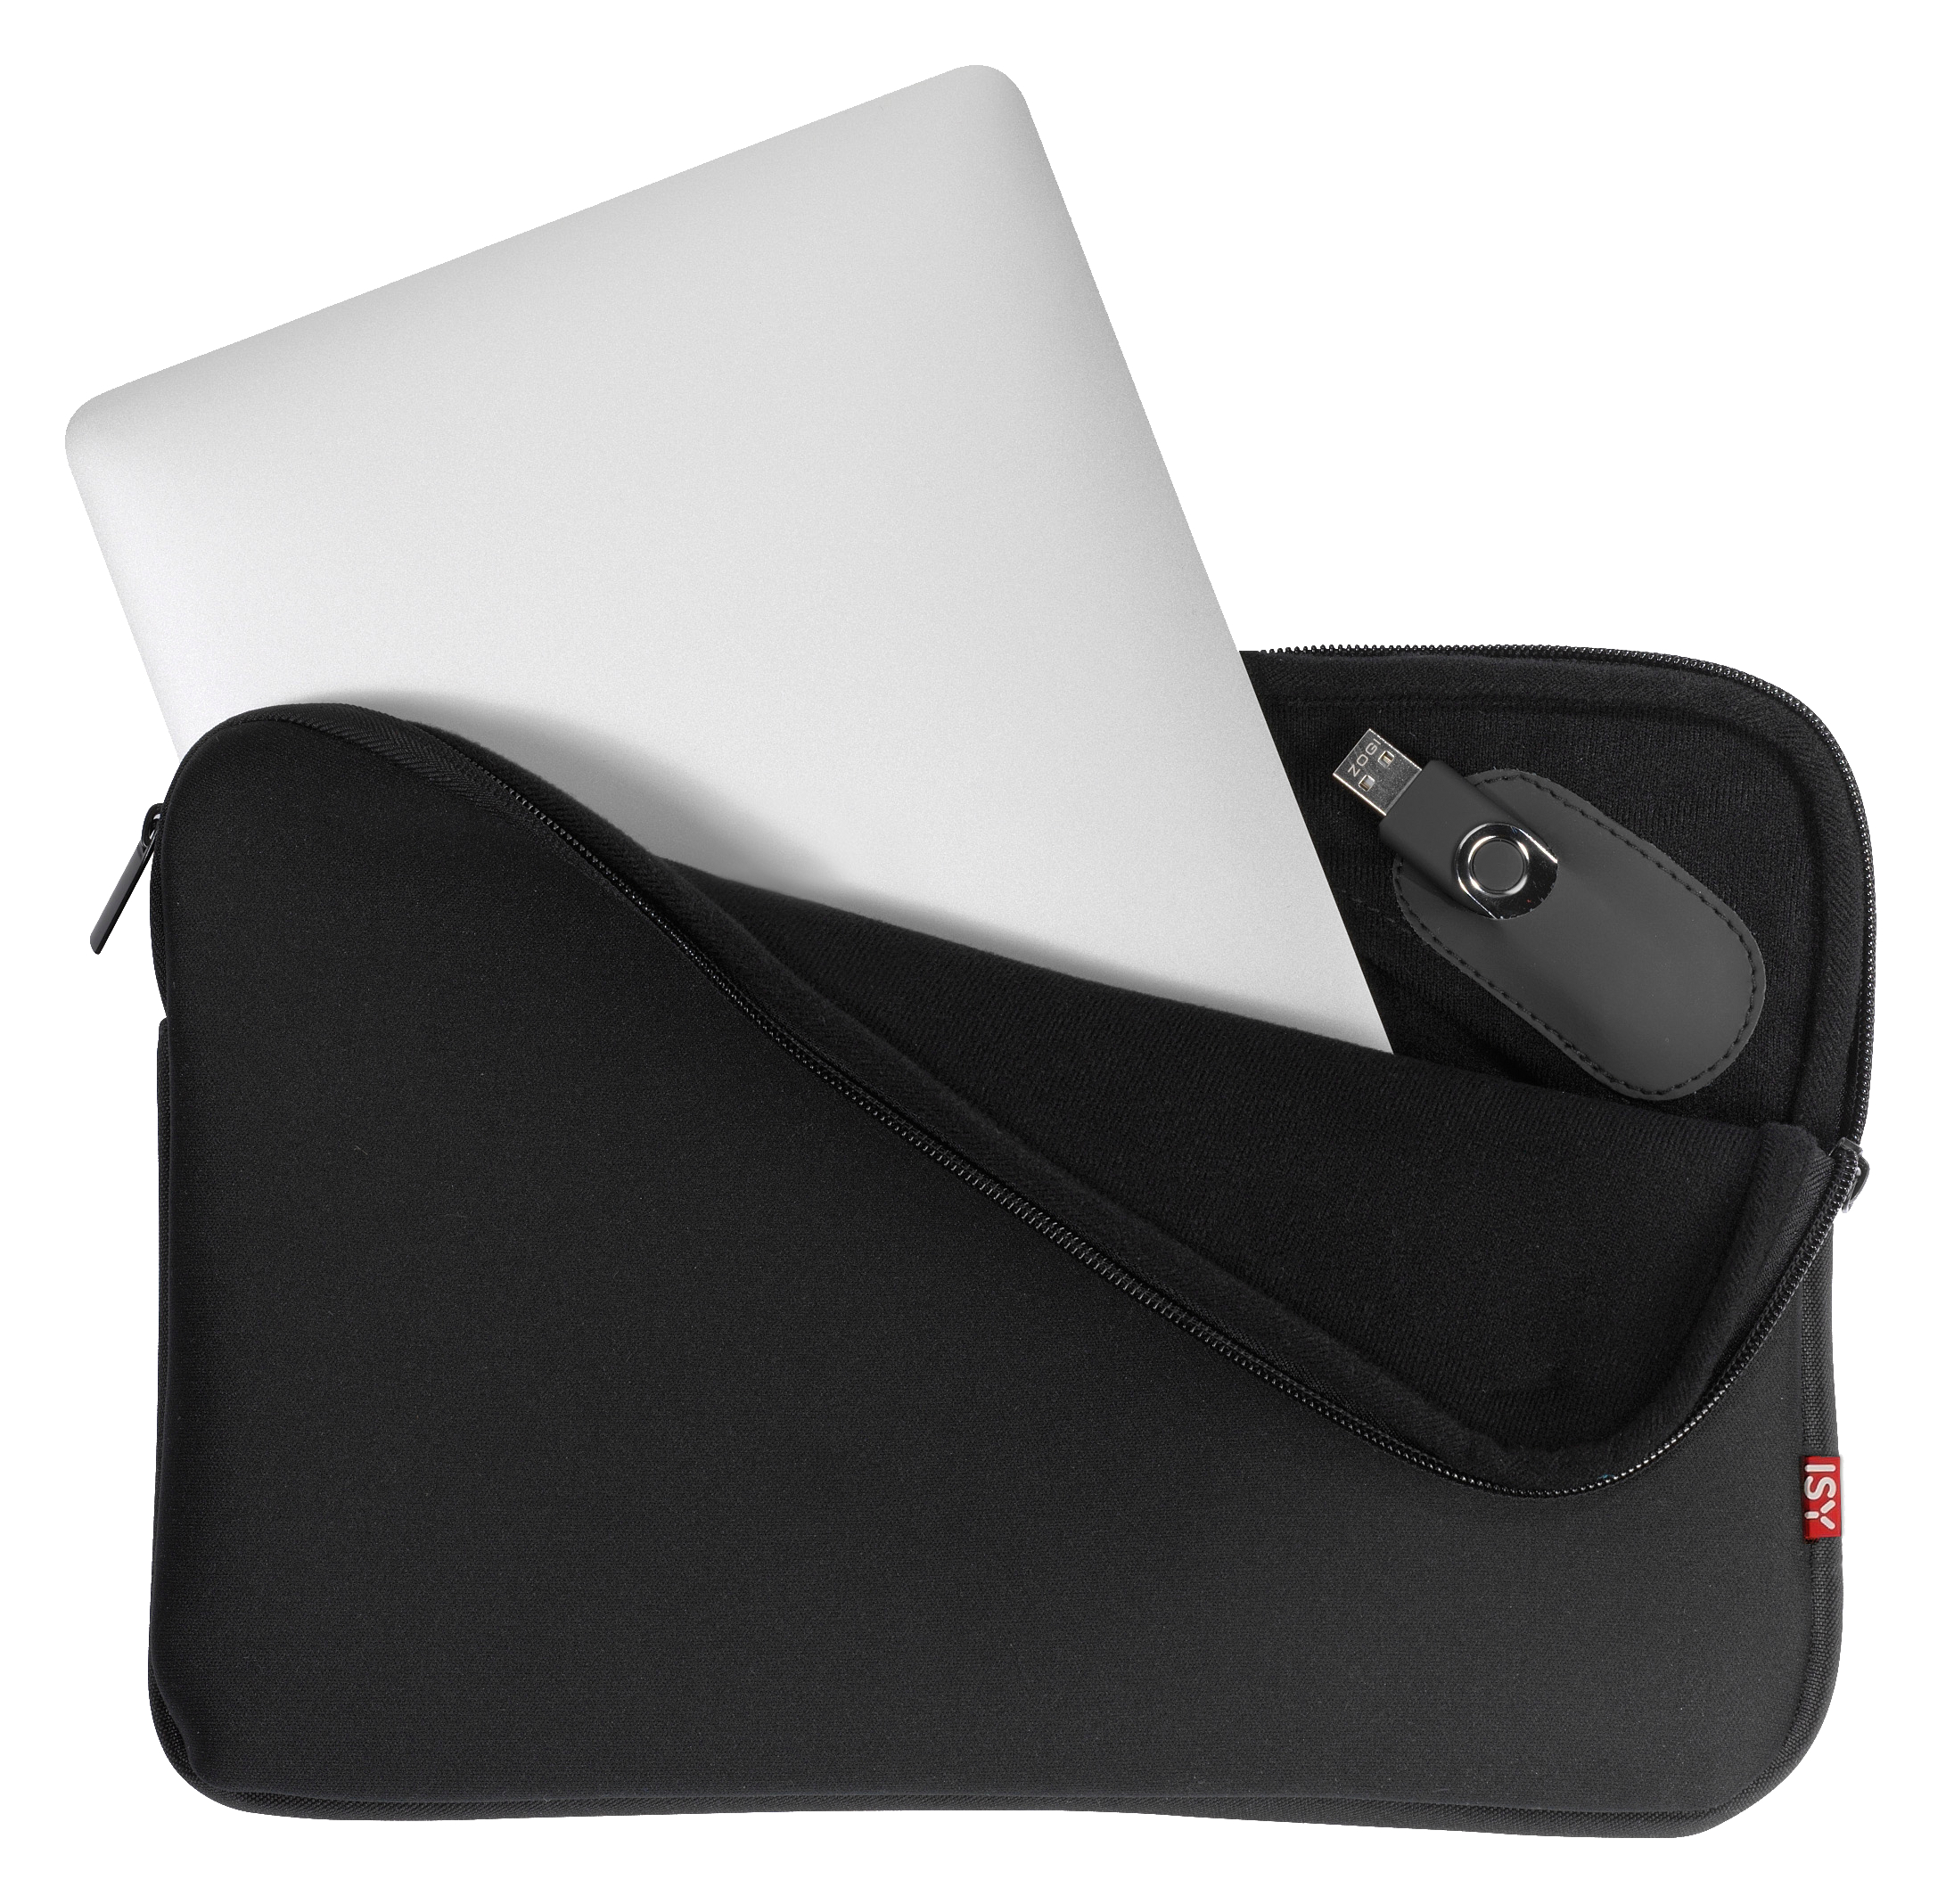 ISY Multispandex mit INB-750-1 Notebooktasche Sleeve Universal für Schwarz Schaumstoff,